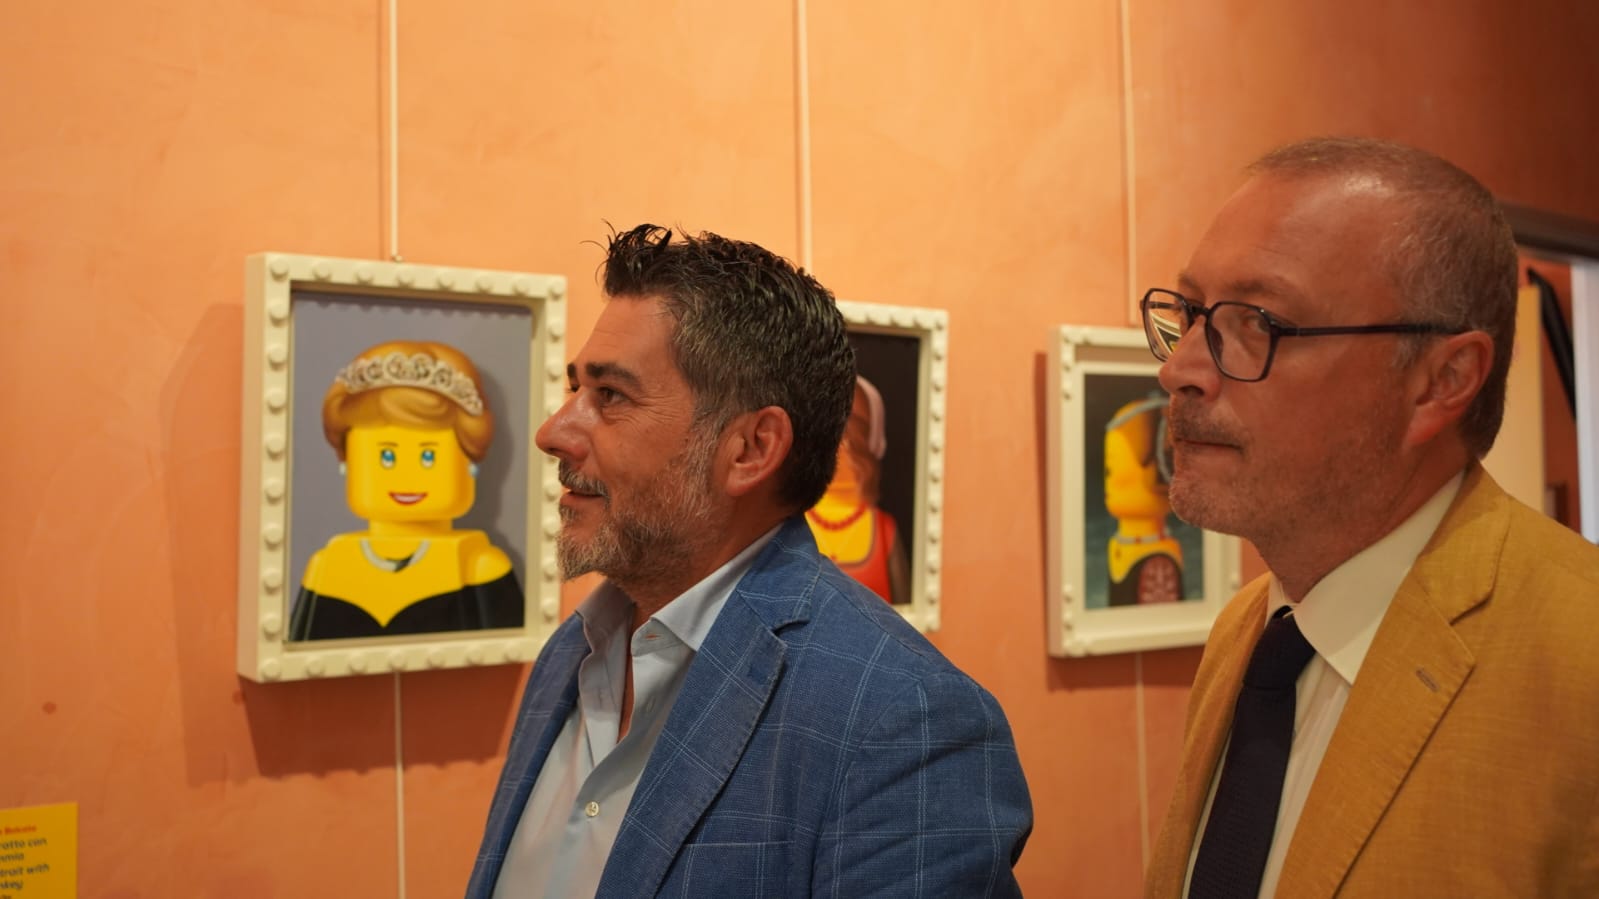 I LOVE LEGO, la mostra dei record arriva a Reggio Calabria: l'esposizione  alla Pinacoteca Civica e nel Foyer del Teatro 'Cilea' - IlDispaccio